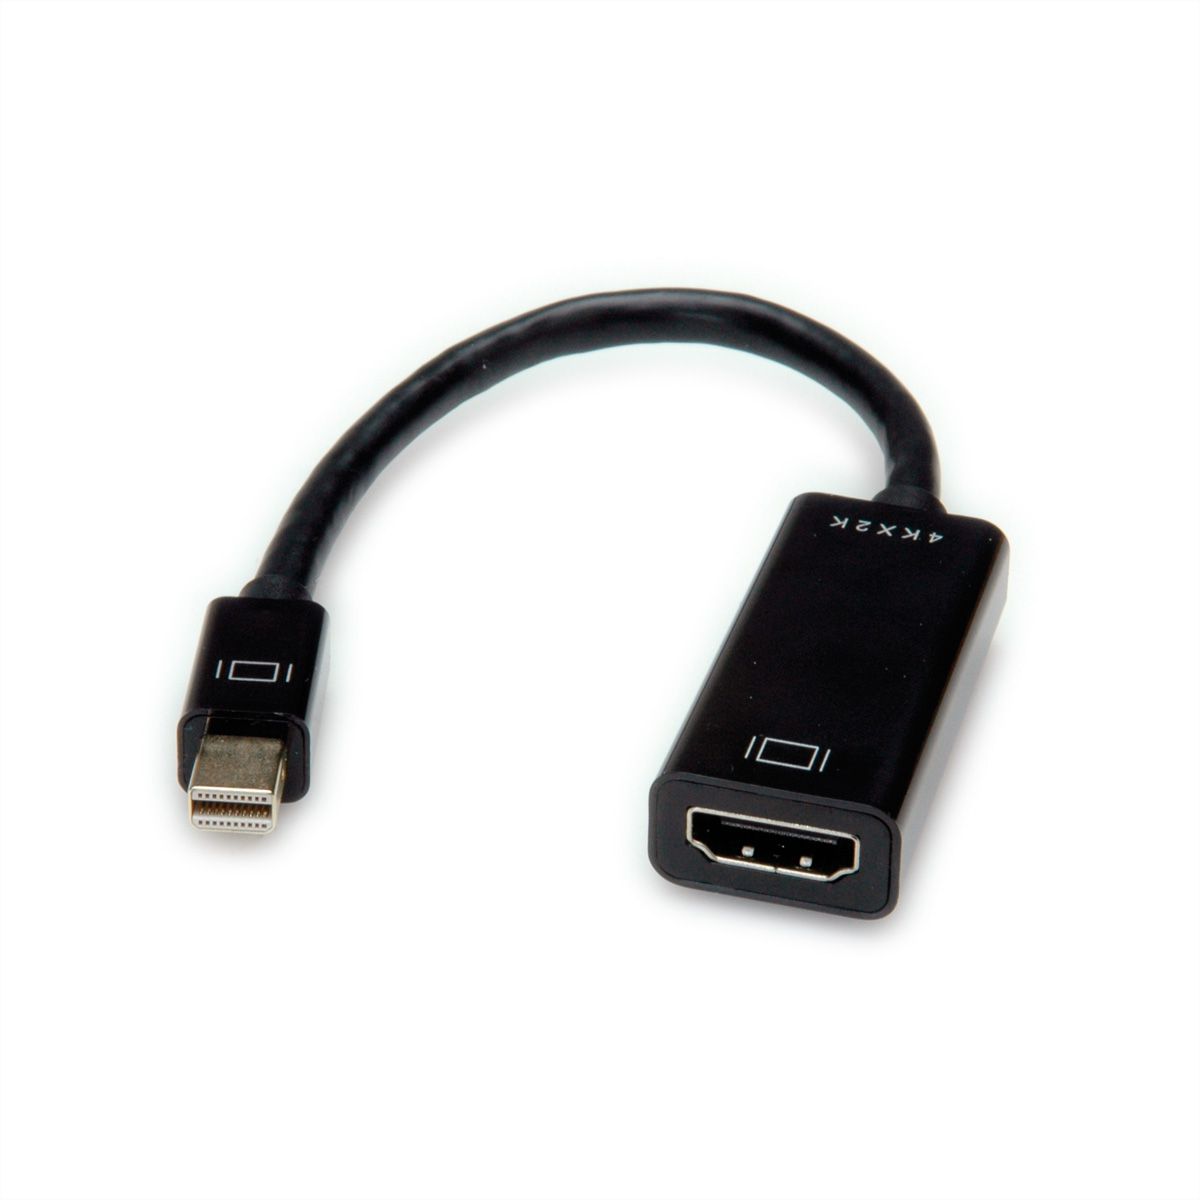 VALUE Adaptateur DisplayPort - HDMI, v1.2, DP M-HDMI F - SECOMP France